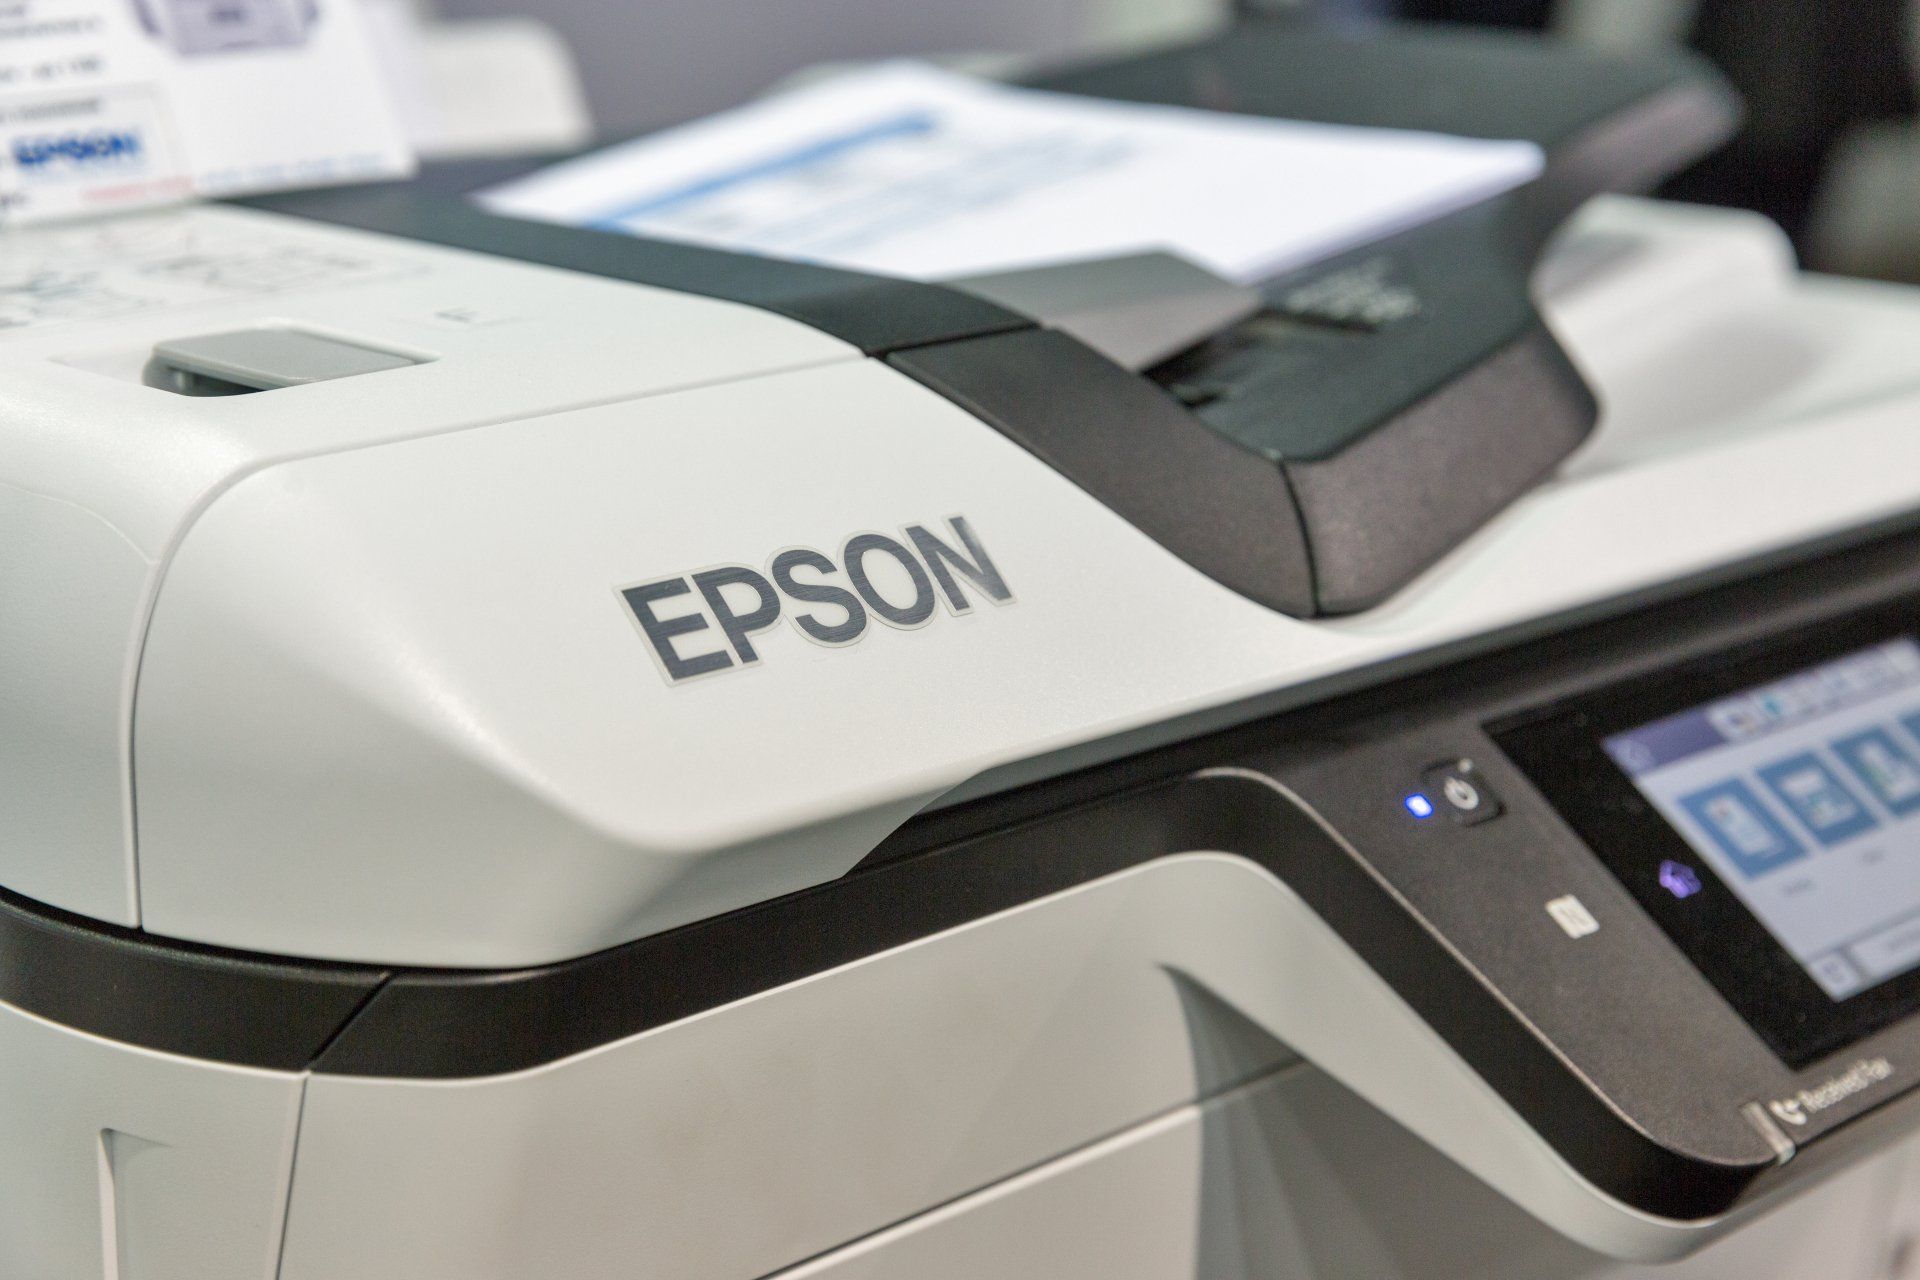 Multi-Vendor Support for Epson printer